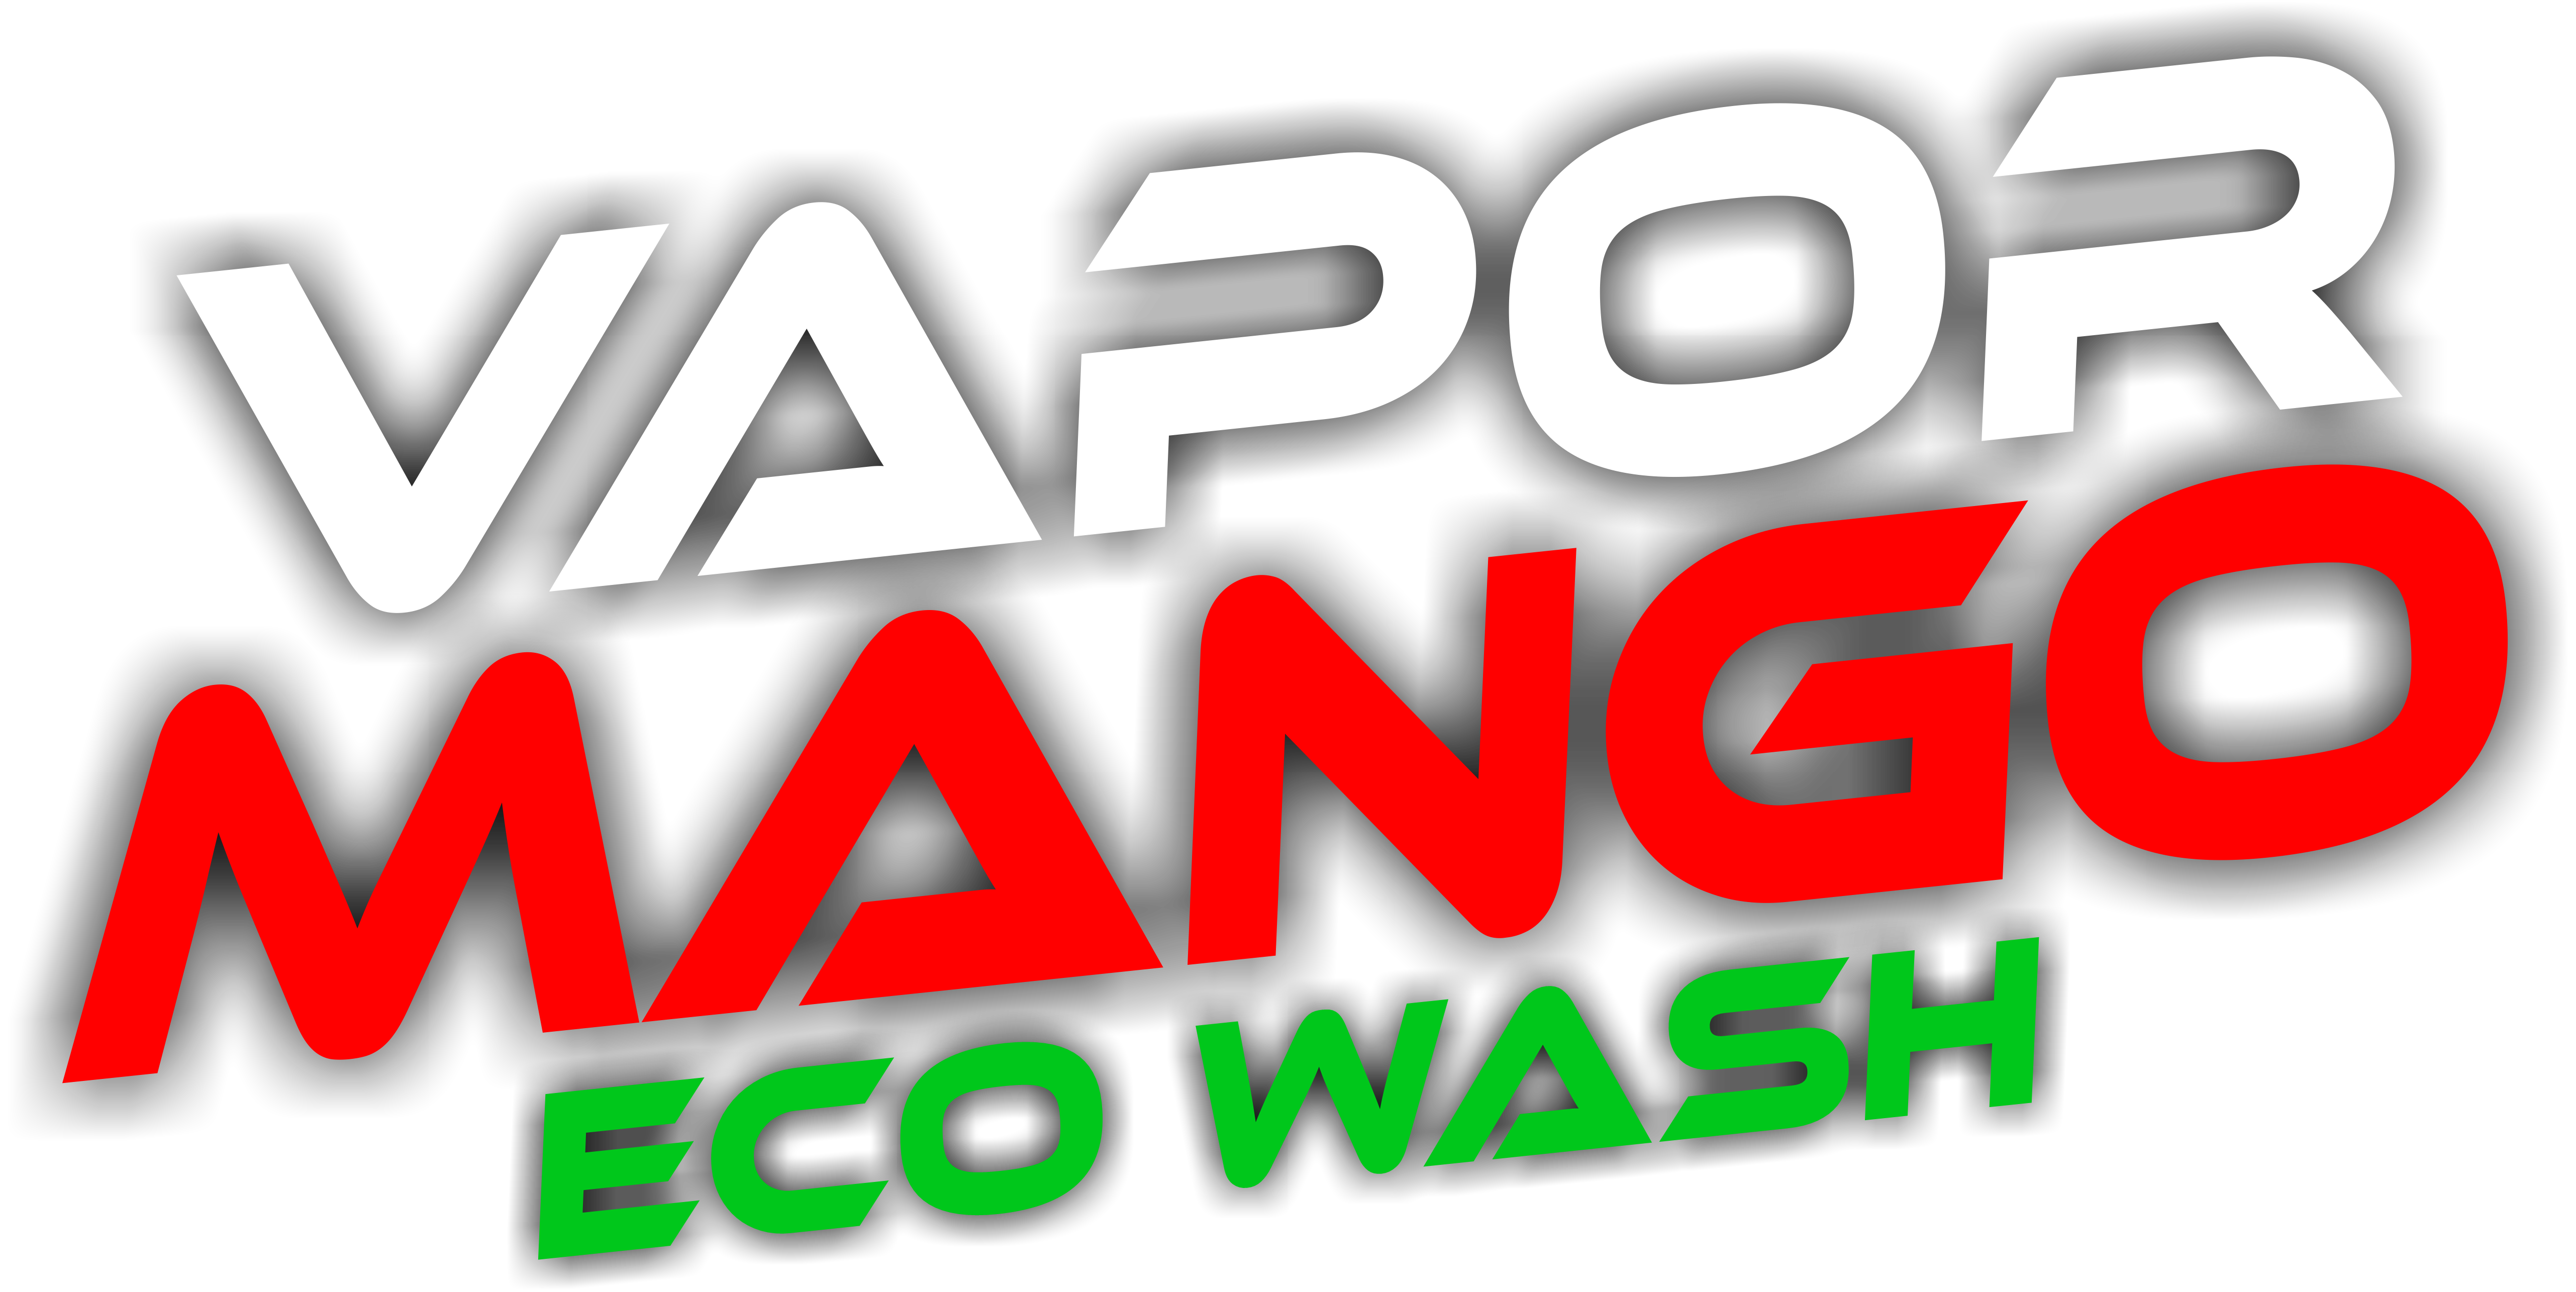 VAPOR-MANGO | ECO WASH